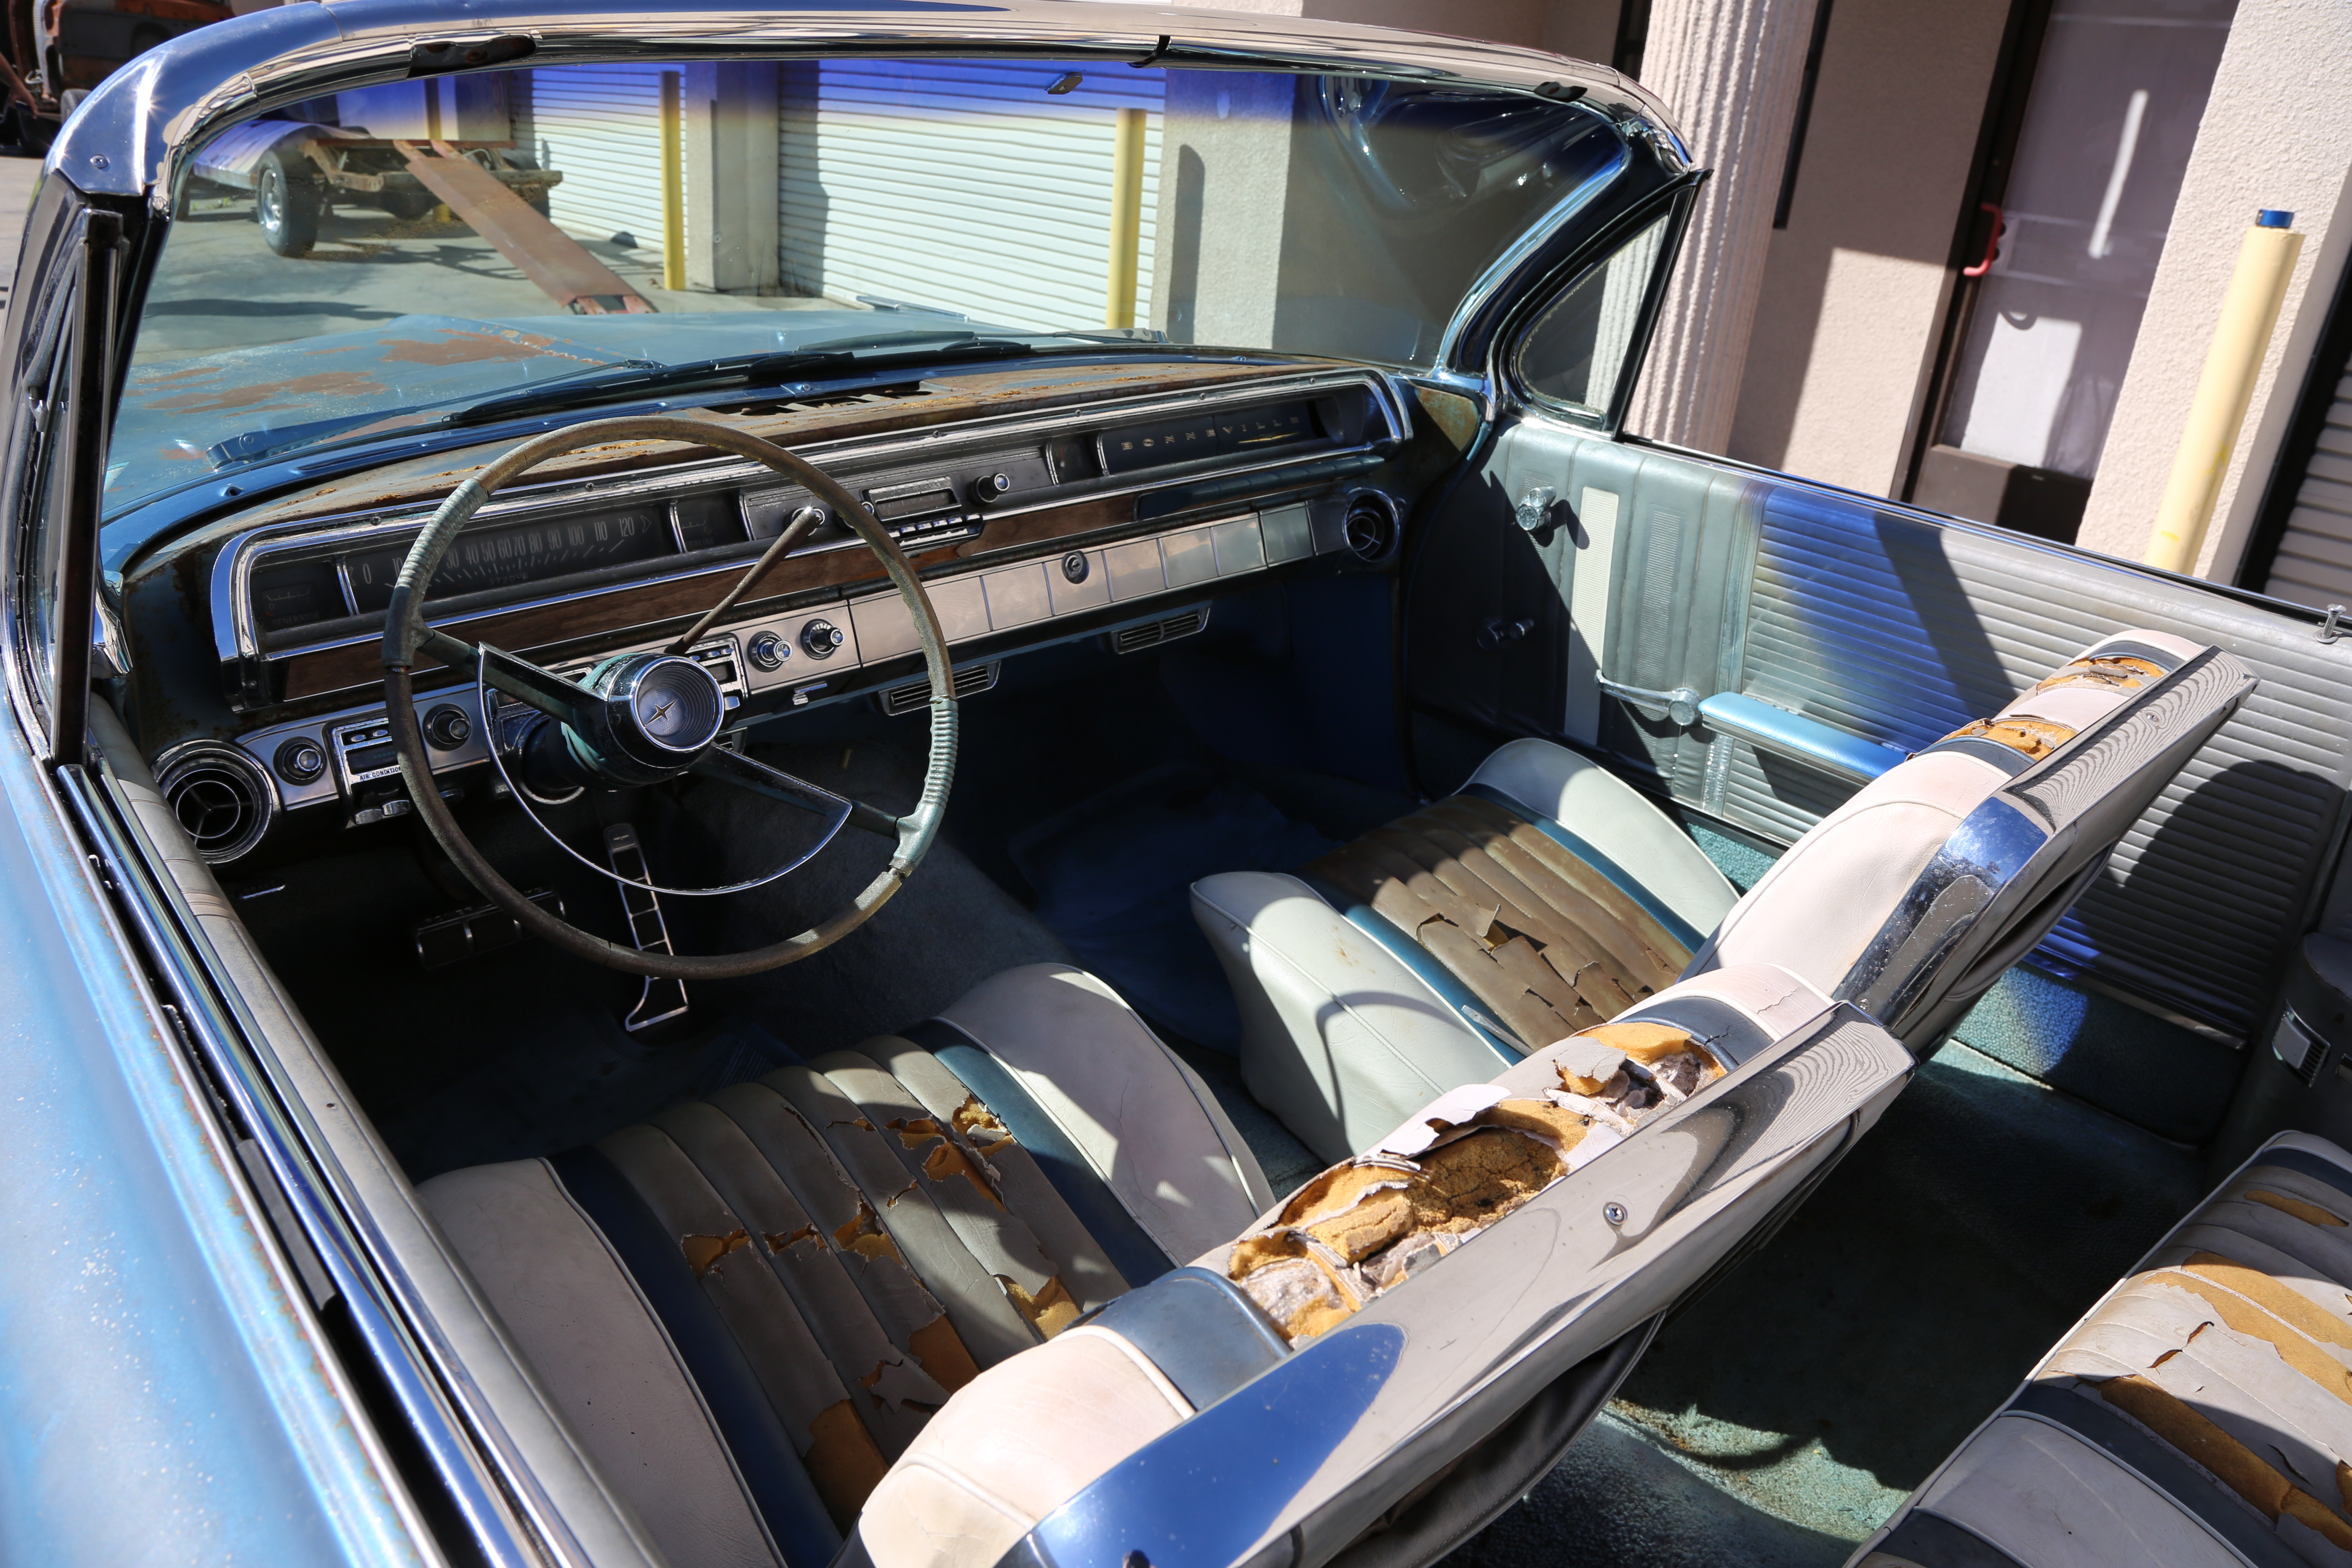 1962, Pontiac, Bonneville, 62, Convertible, cars for sale, Cars, For, sale